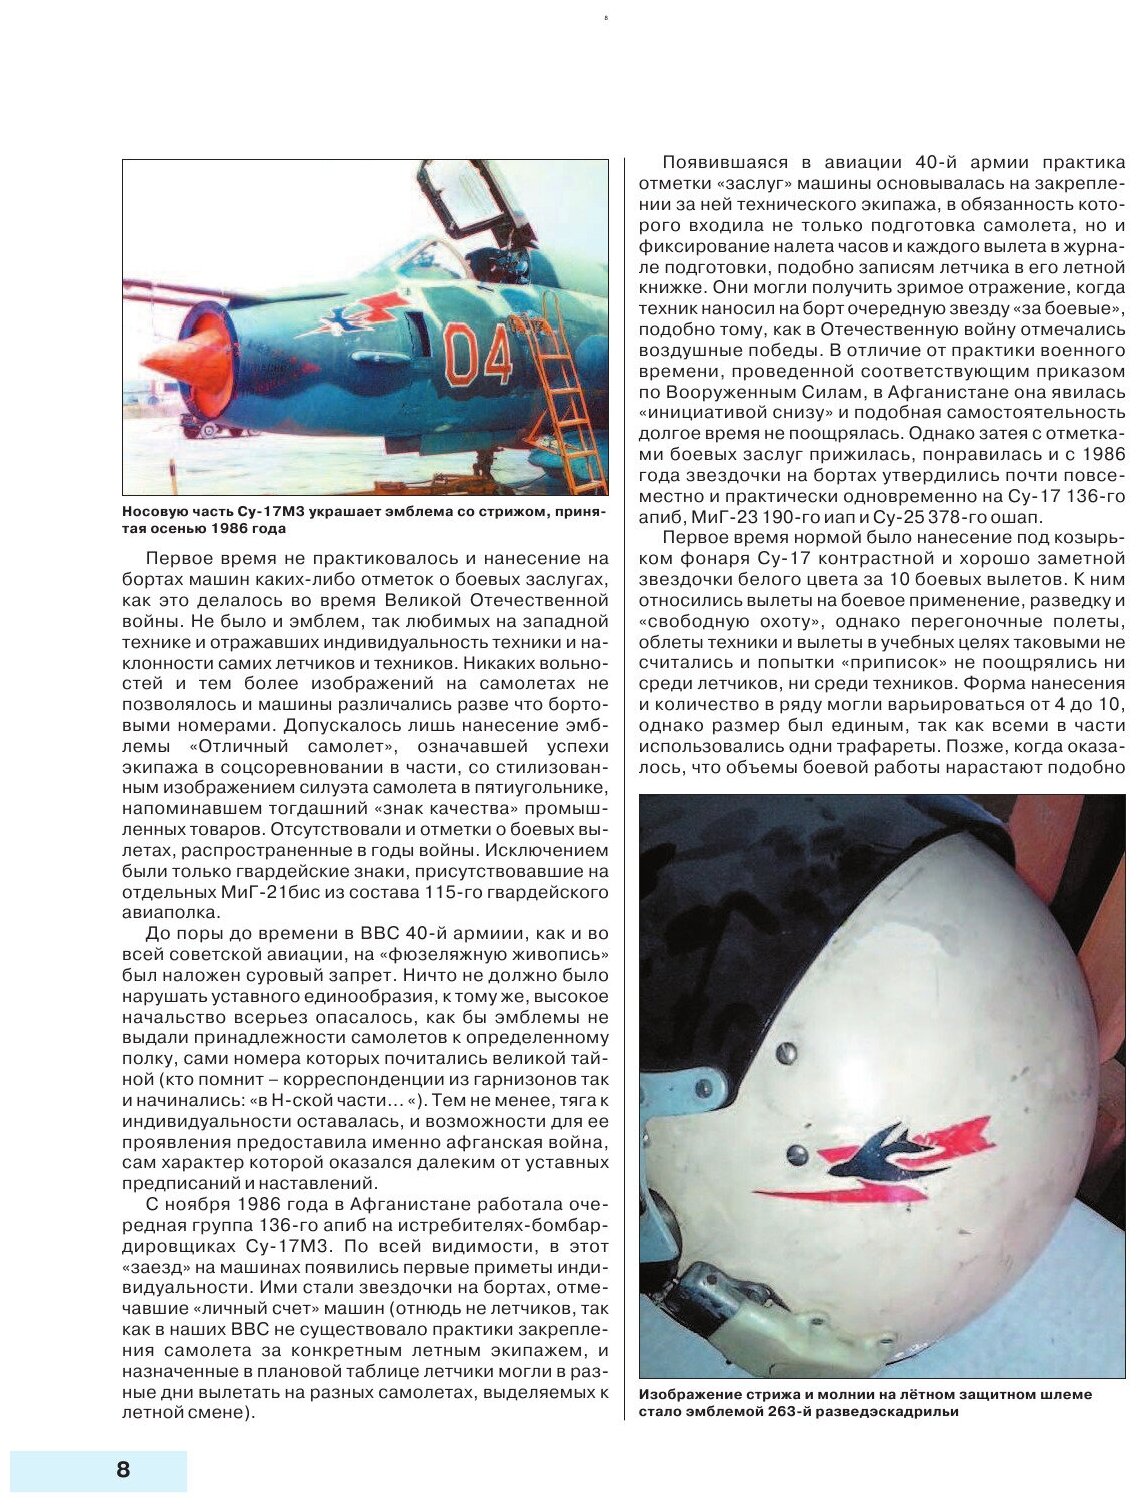 Камуфляж и бортовые эмблемы авиатехники советских ВВС в афганской кампании - фото №11